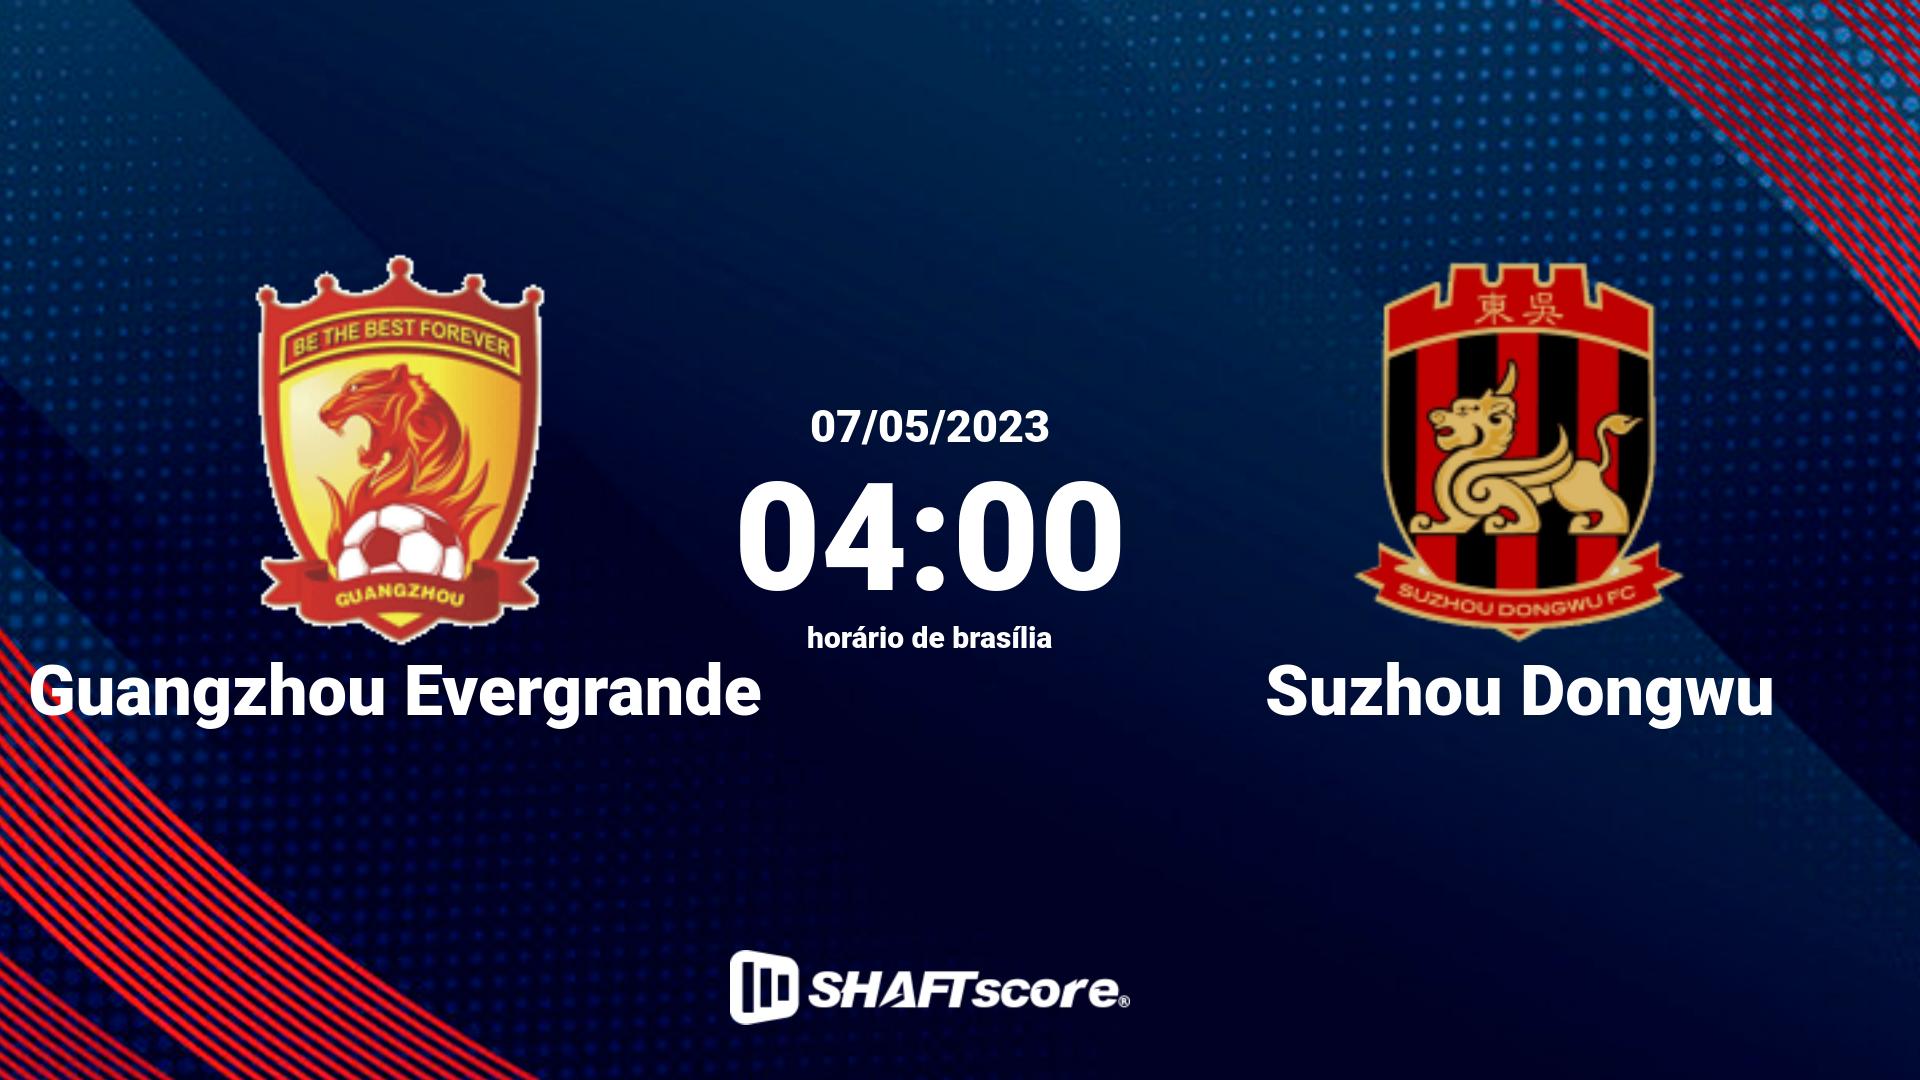 Estatísticas do jogo Guangzhou Evergrande vs Suzhou Dongwu 07.05 04:00